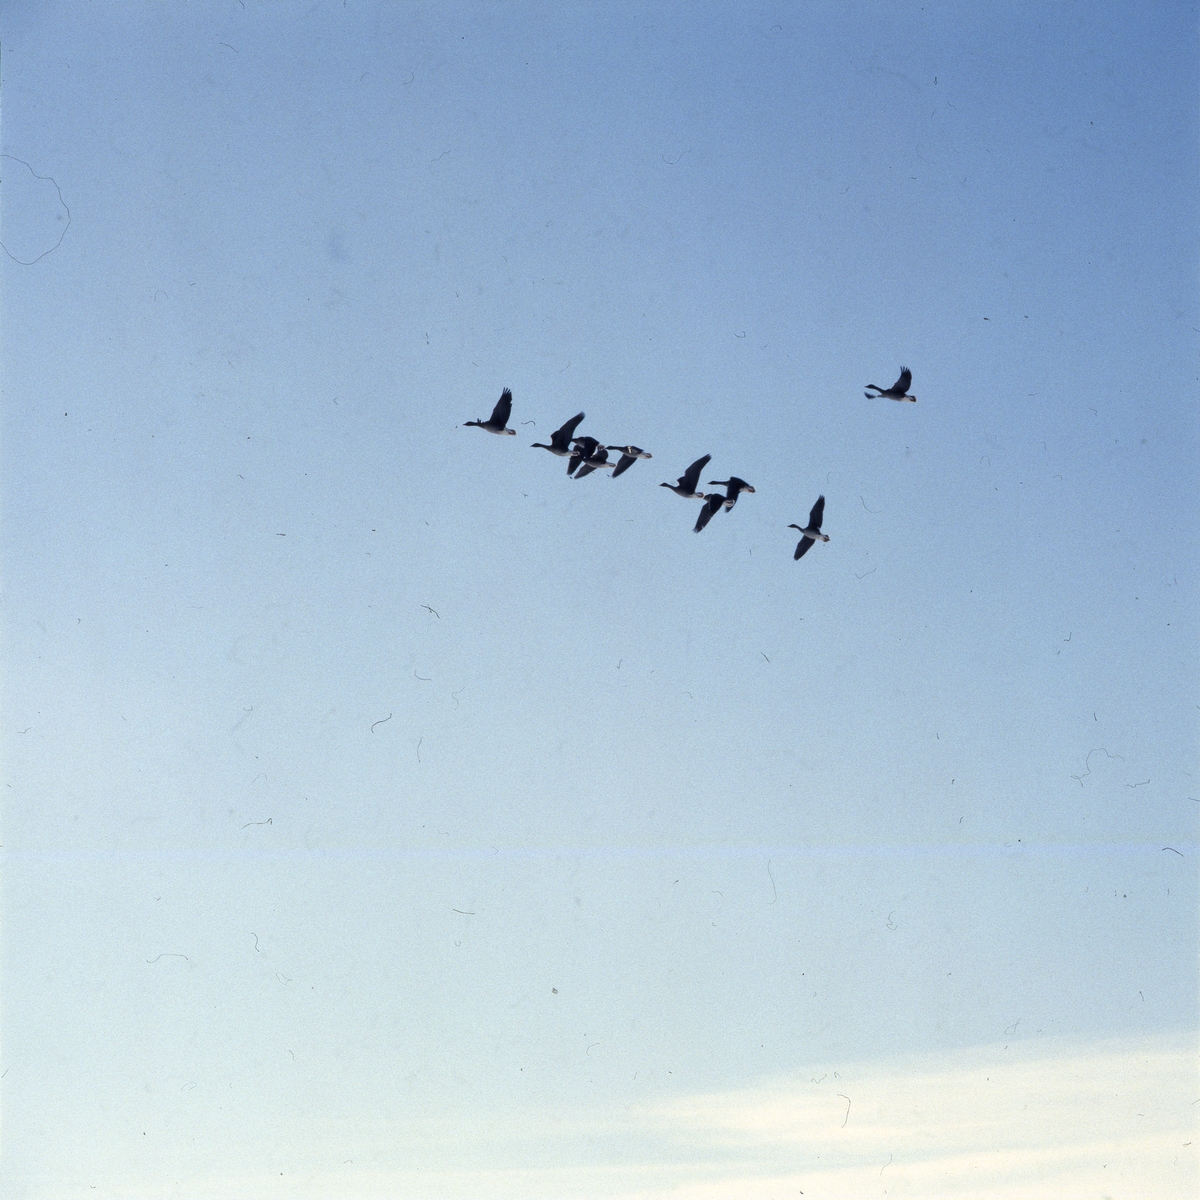 Flygande gäss mot blå himmel, Skåne 1 mars 1986.